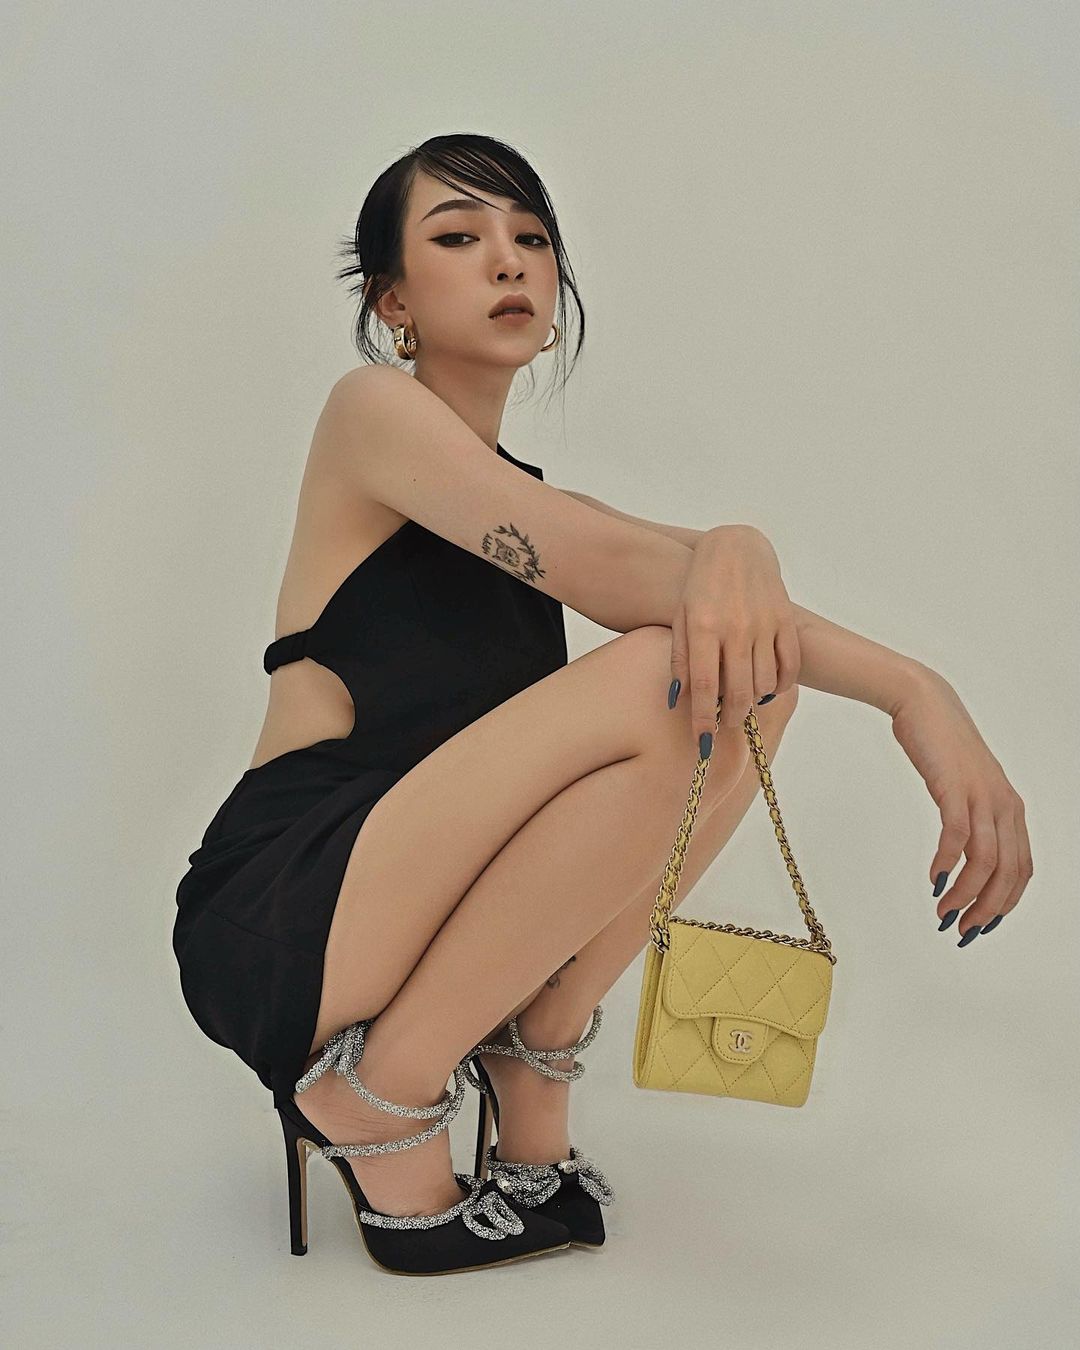 Joyce Phạm theo đuổi phong cách thời trang cá tính, quyến rũ. Cô thường xuất hiện trong những item ôm sát, tôn dáng hoặc cut xẻ táo bạo.